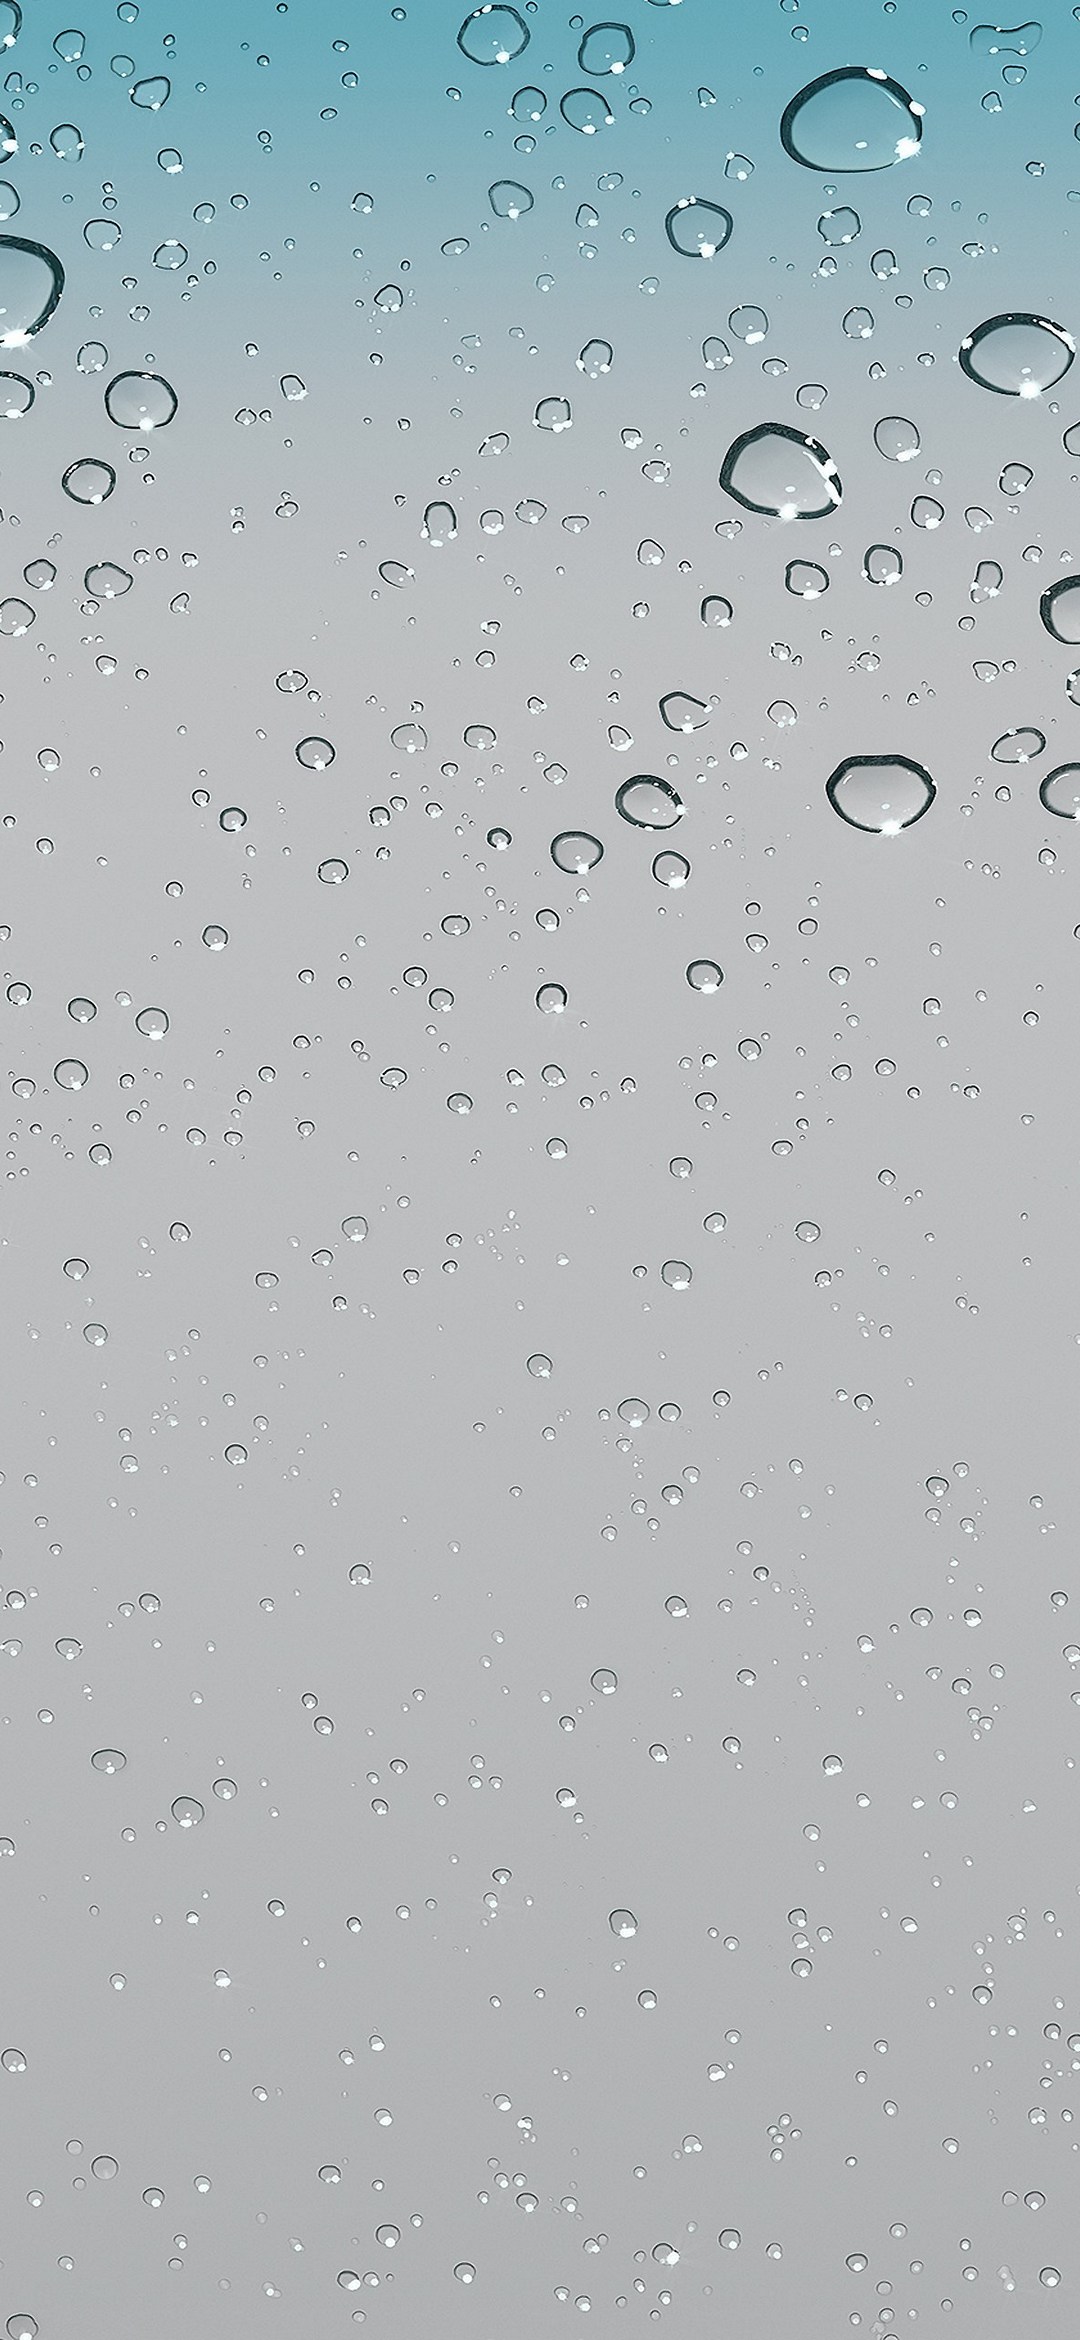 水滴のついた綺麗なガラス面 Google Pixel 5 Android 壁紙 待ち受け スマラン